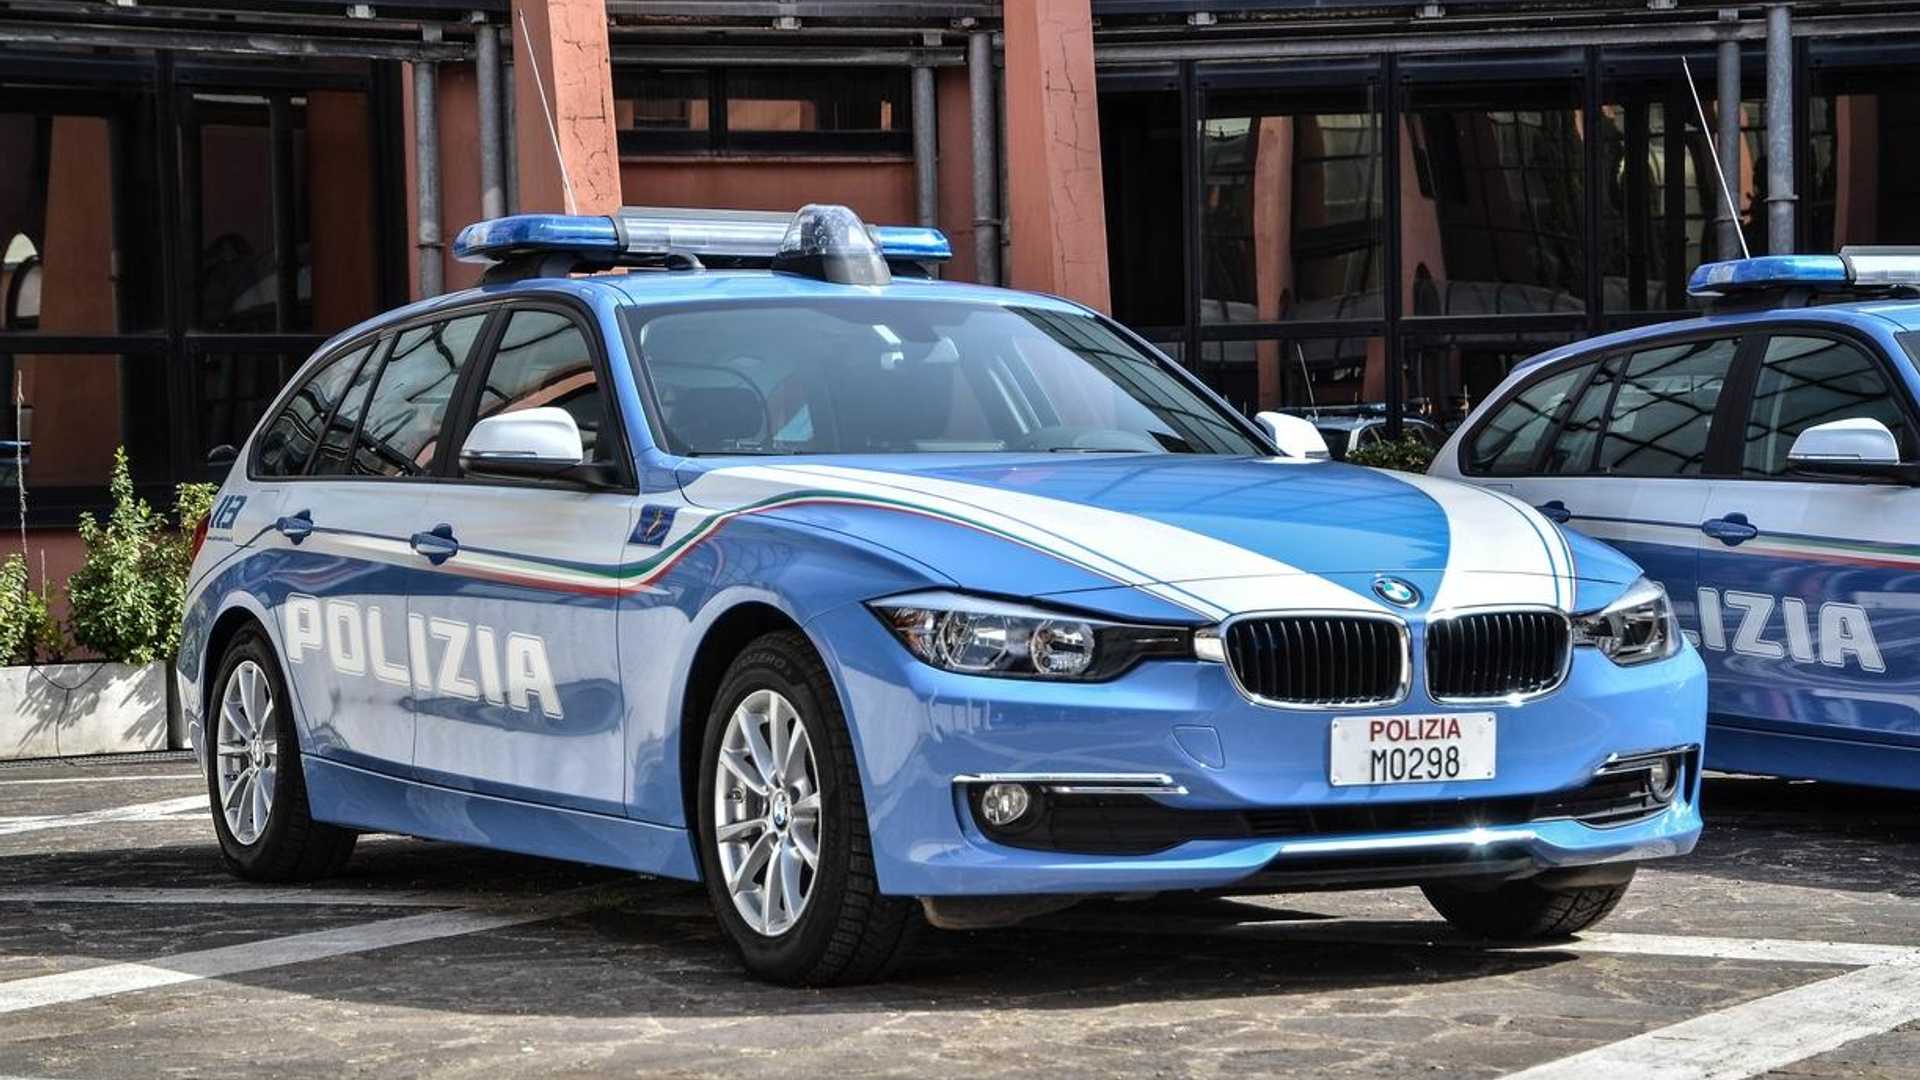 Синяя полицейская машина. 143 Модели BMW 320 D Touring 2003 polizia. Polizia Stradale знак. Автомобили полиции Италии. Итальянская Полицейская машина.